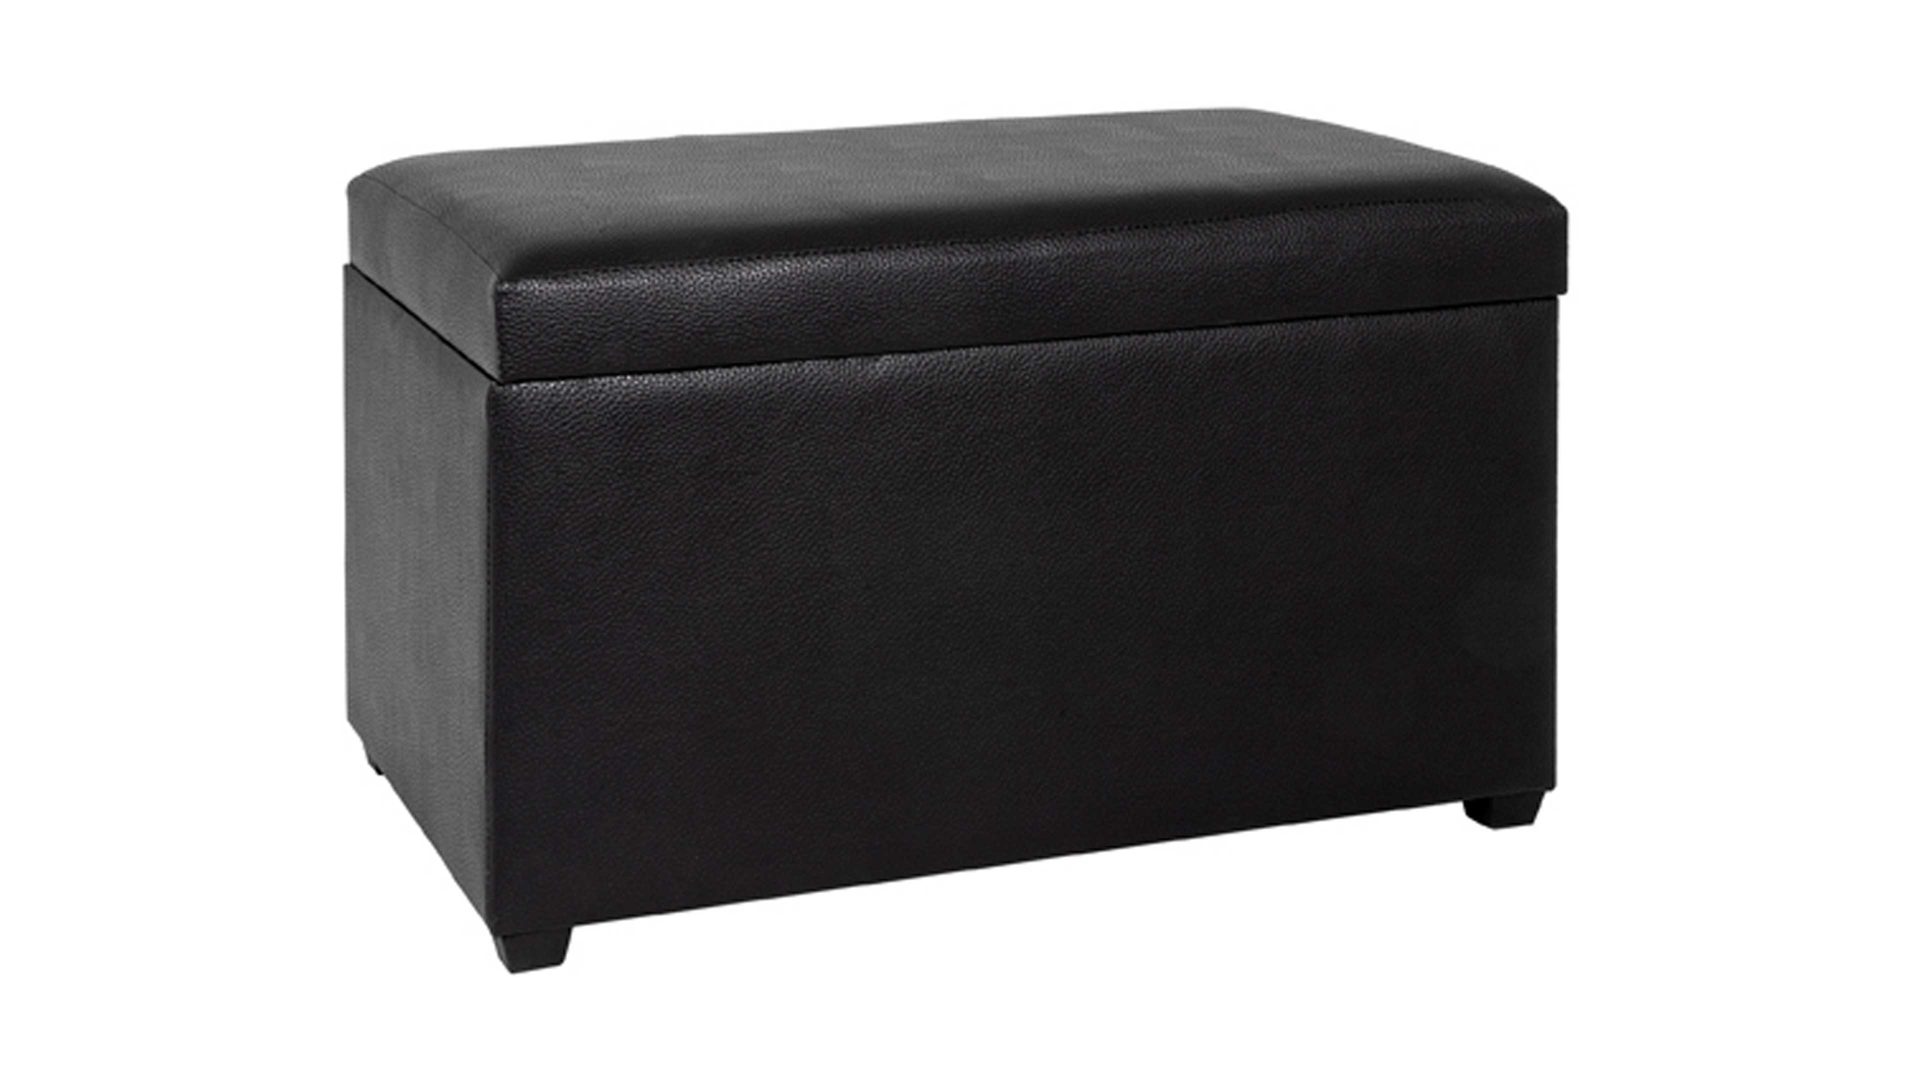 Truhe Haku aus Stoff in Schwarz Sitztruhe mit Stauraum bzw. Sitzbank schwarzes Kunstleder - ca. 65 x 42 x 40 cm